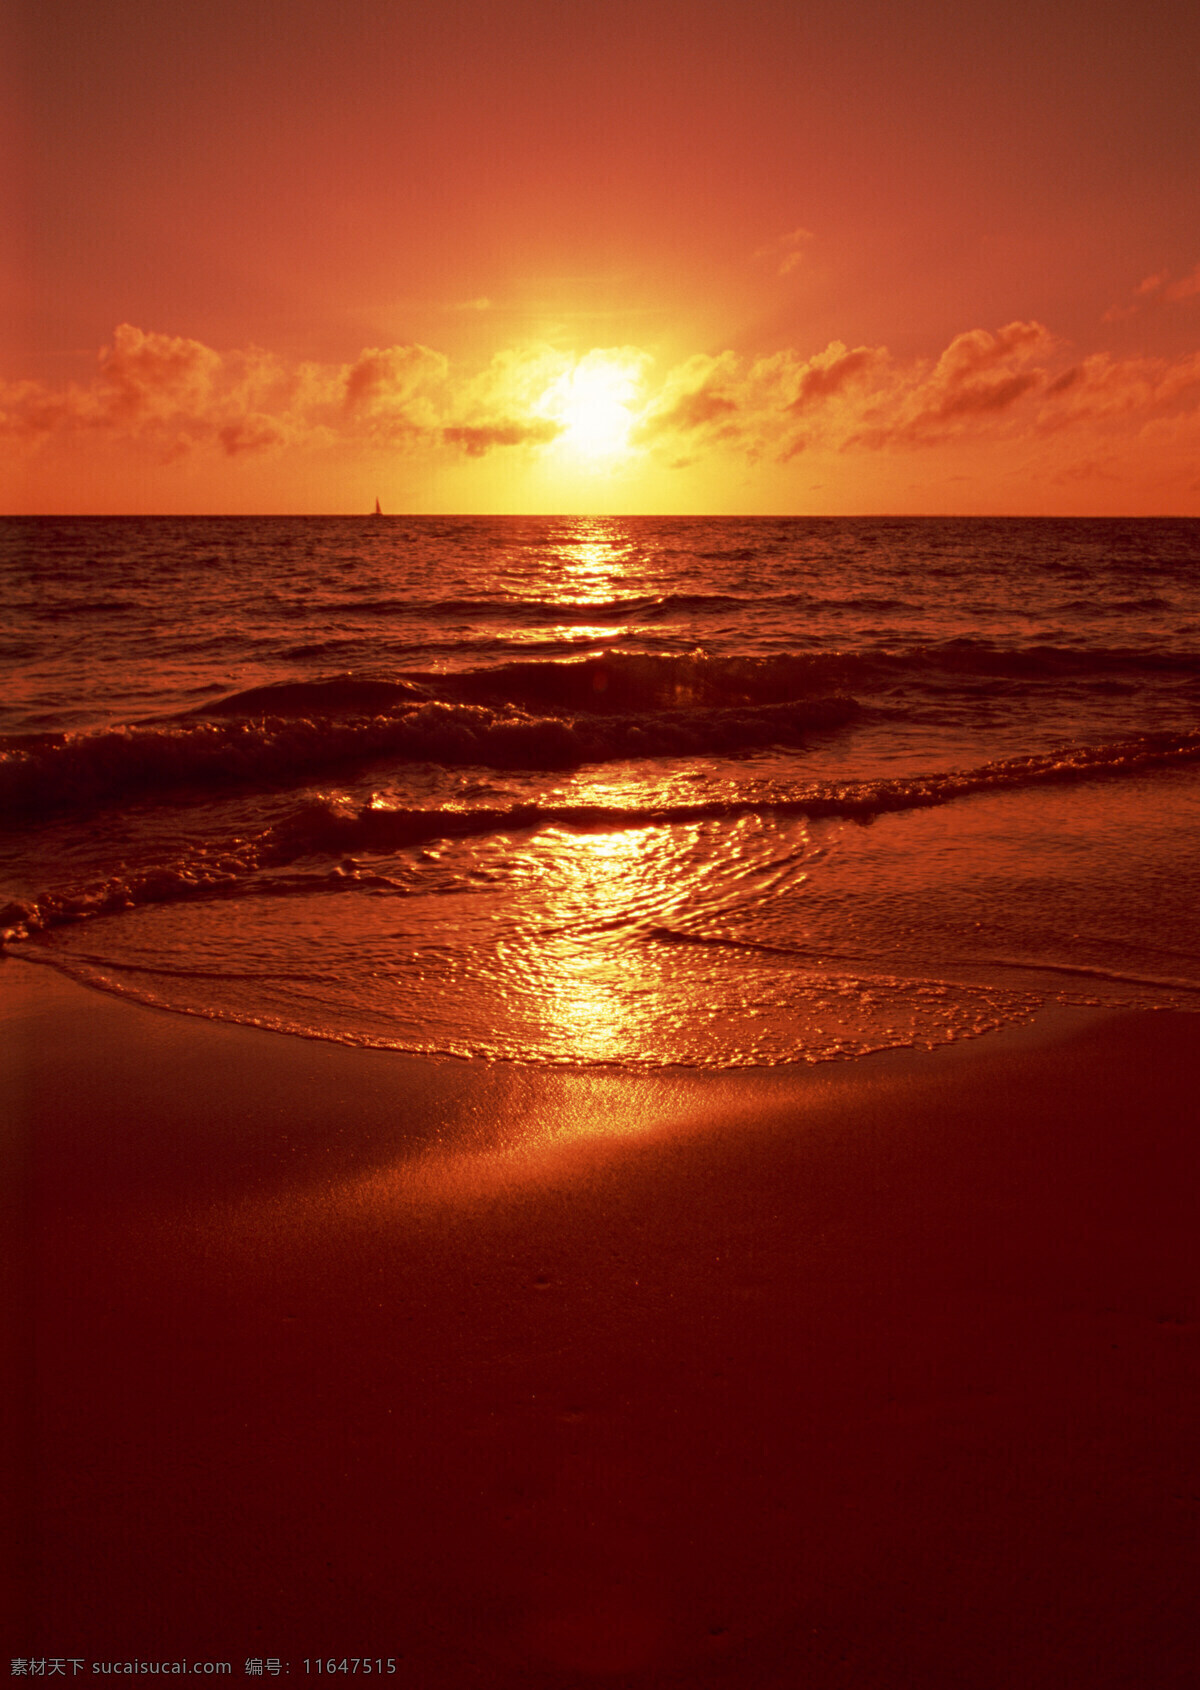 海边的日出 海上日出 海水 海滩 落日 日出 日出东方 太阳 旭日东升 阳光 夕阳 边的日出 水天相接 潮汐 海边日出 自然风景 自然景观